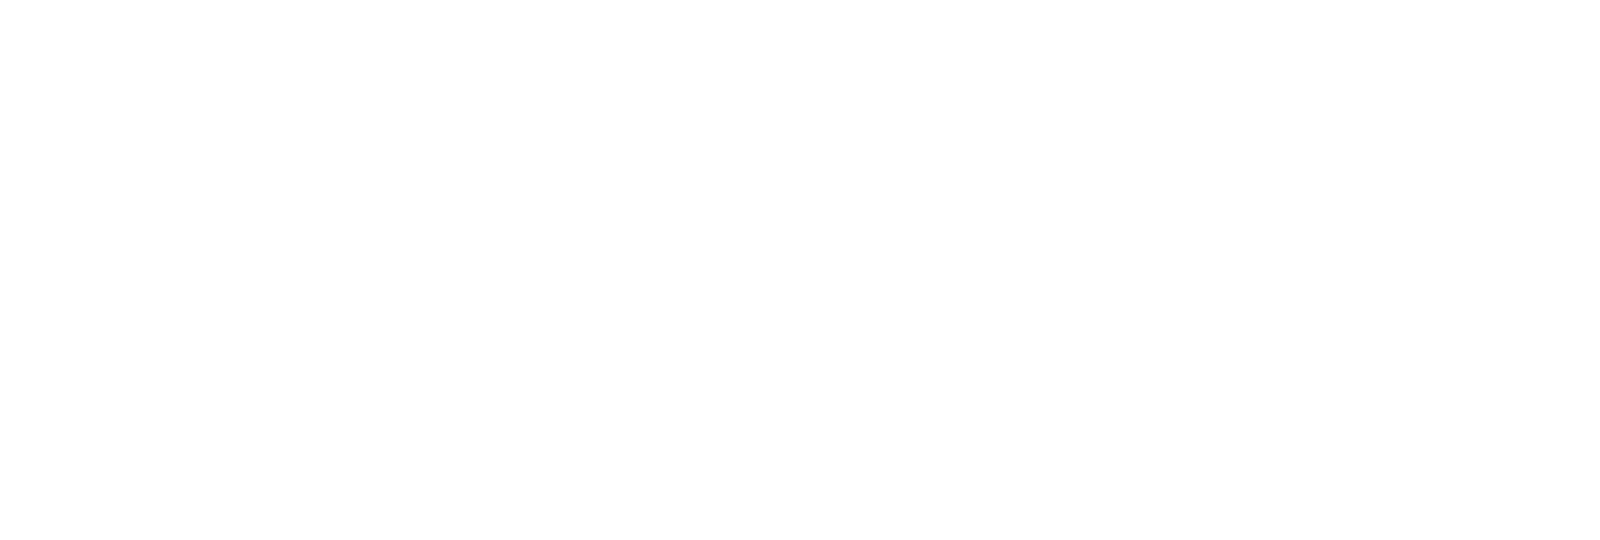 Керамическая плитка Extra White Gloss WT15EXT00 Плитка настенная 253*750*9,5 (7 шт в уп/55,776 кв.м в пал) / коллекция Amazonit Delacora Exotic Delacora / производитель DELACORA / страна Россия